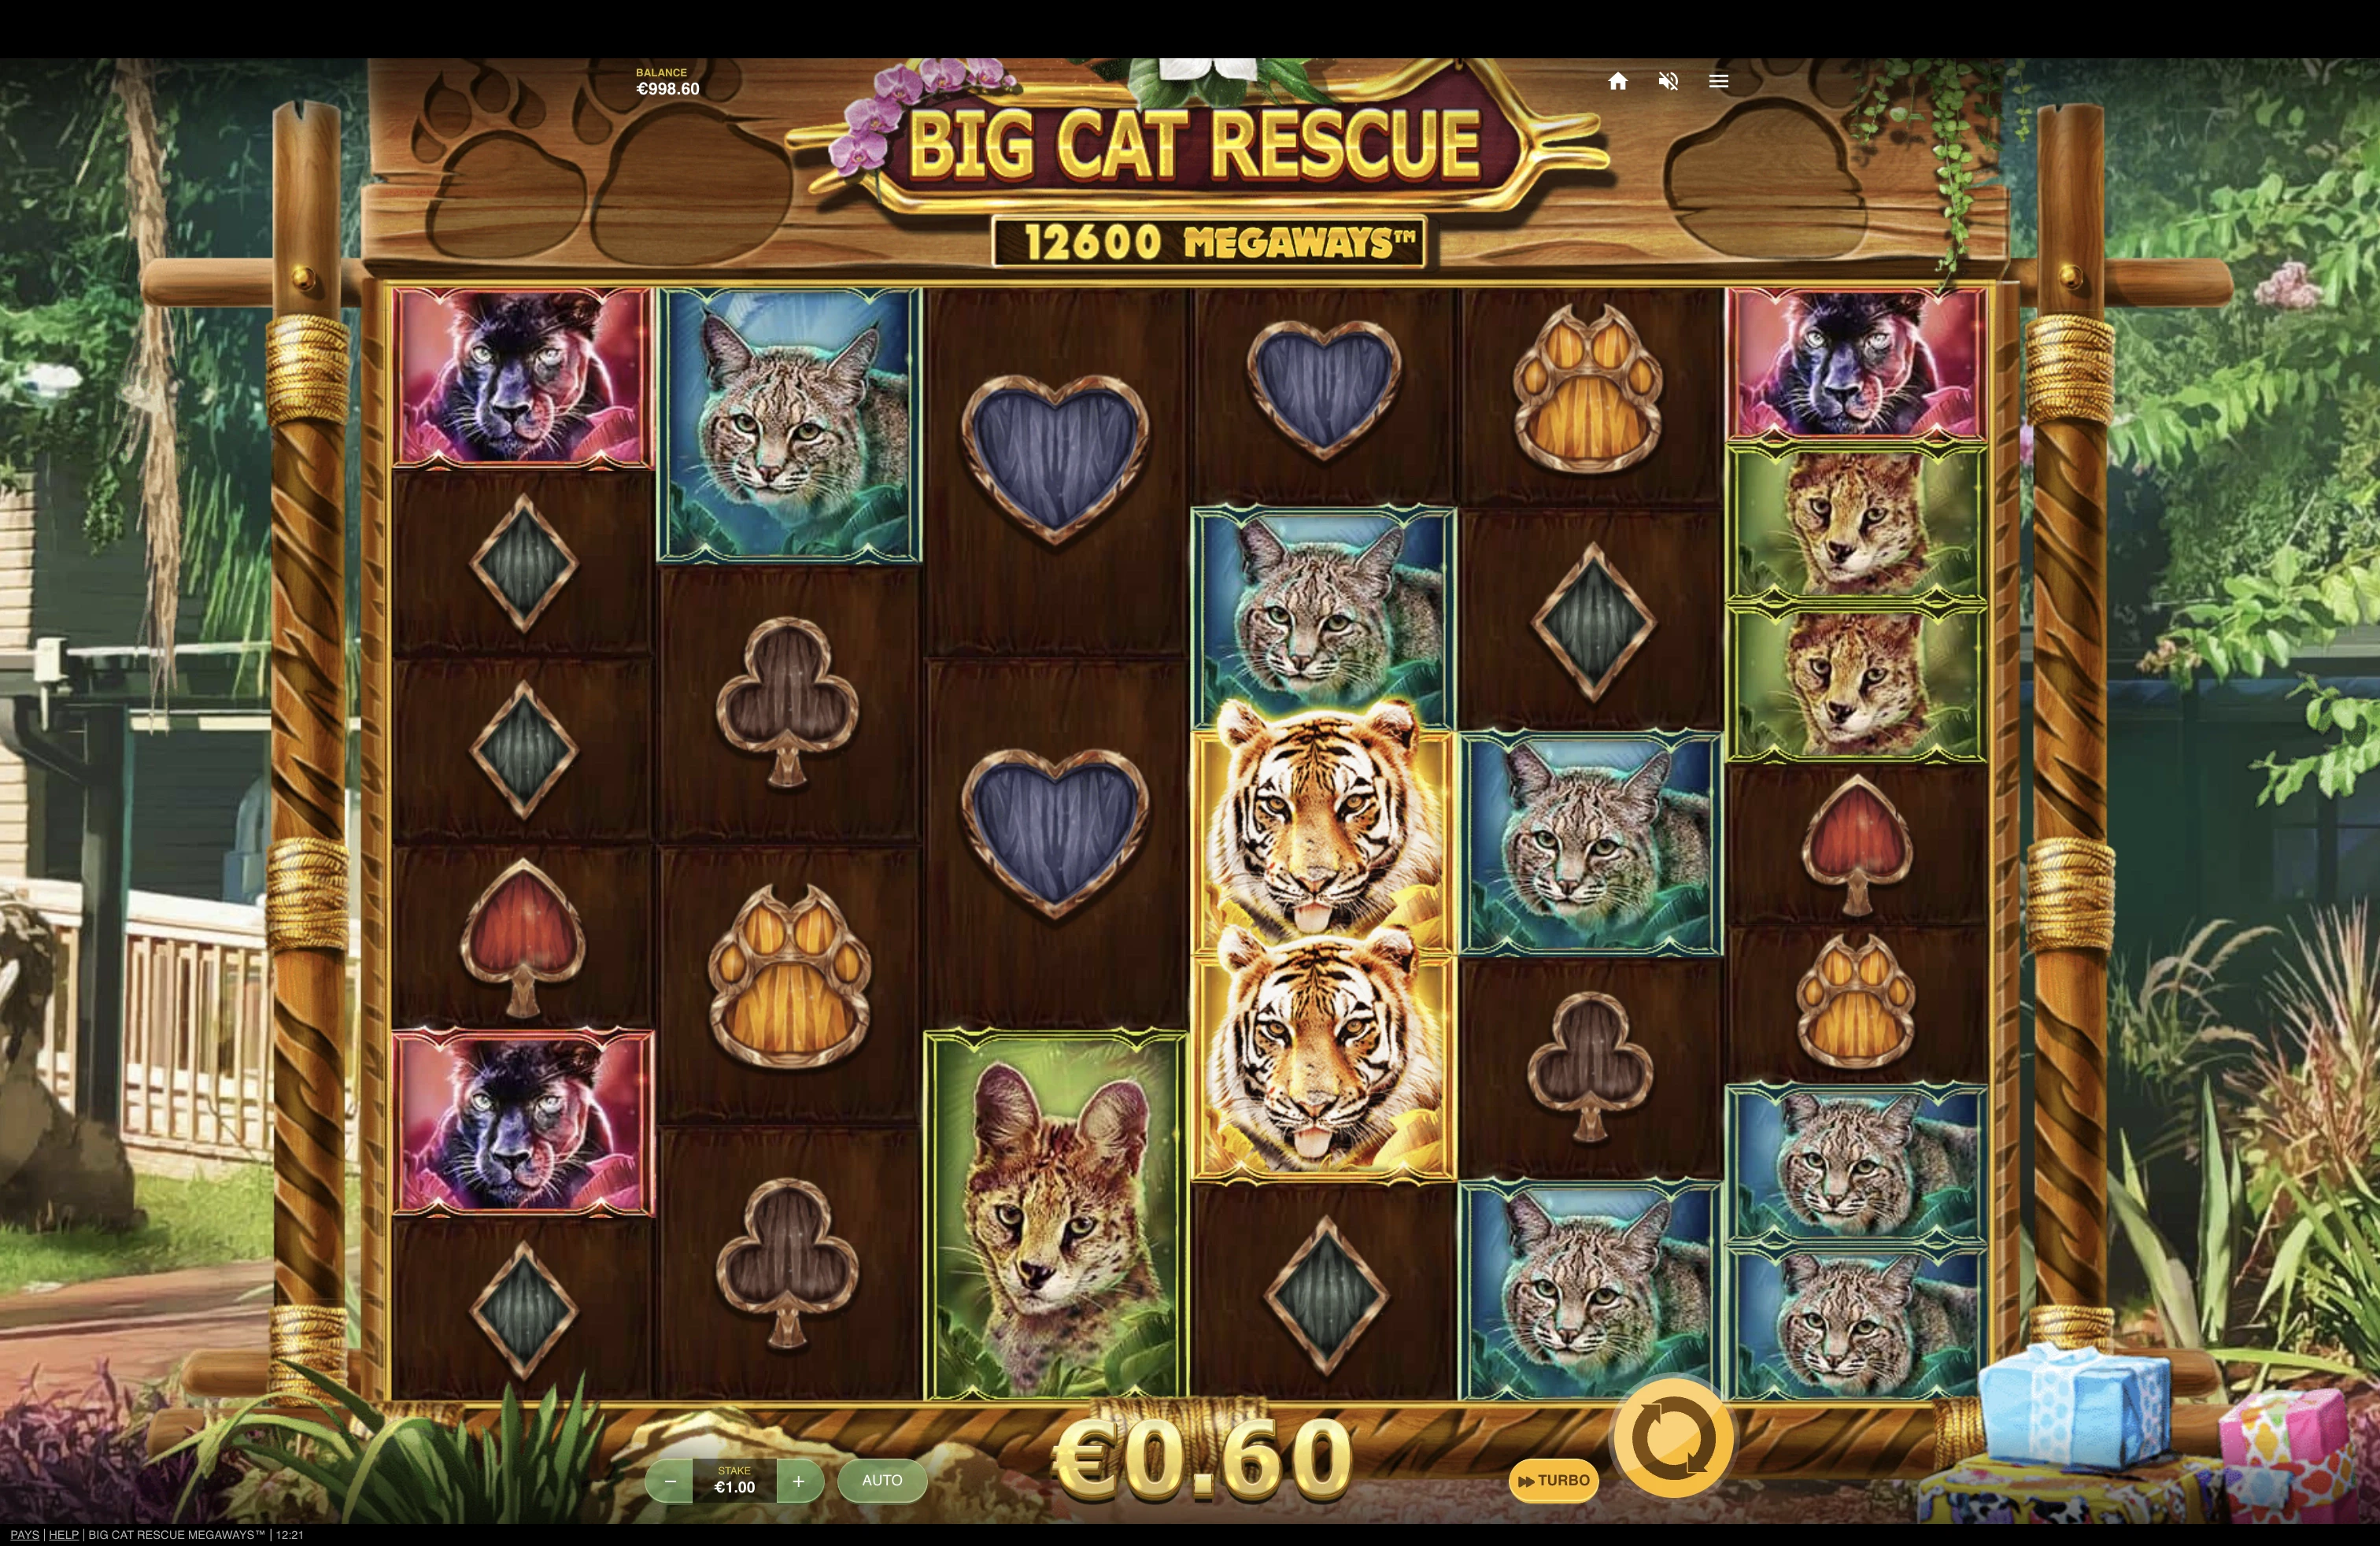 Grille de départ de la machine a sous Big Cat Rescue Megaways du provider Red Tiger Gaming